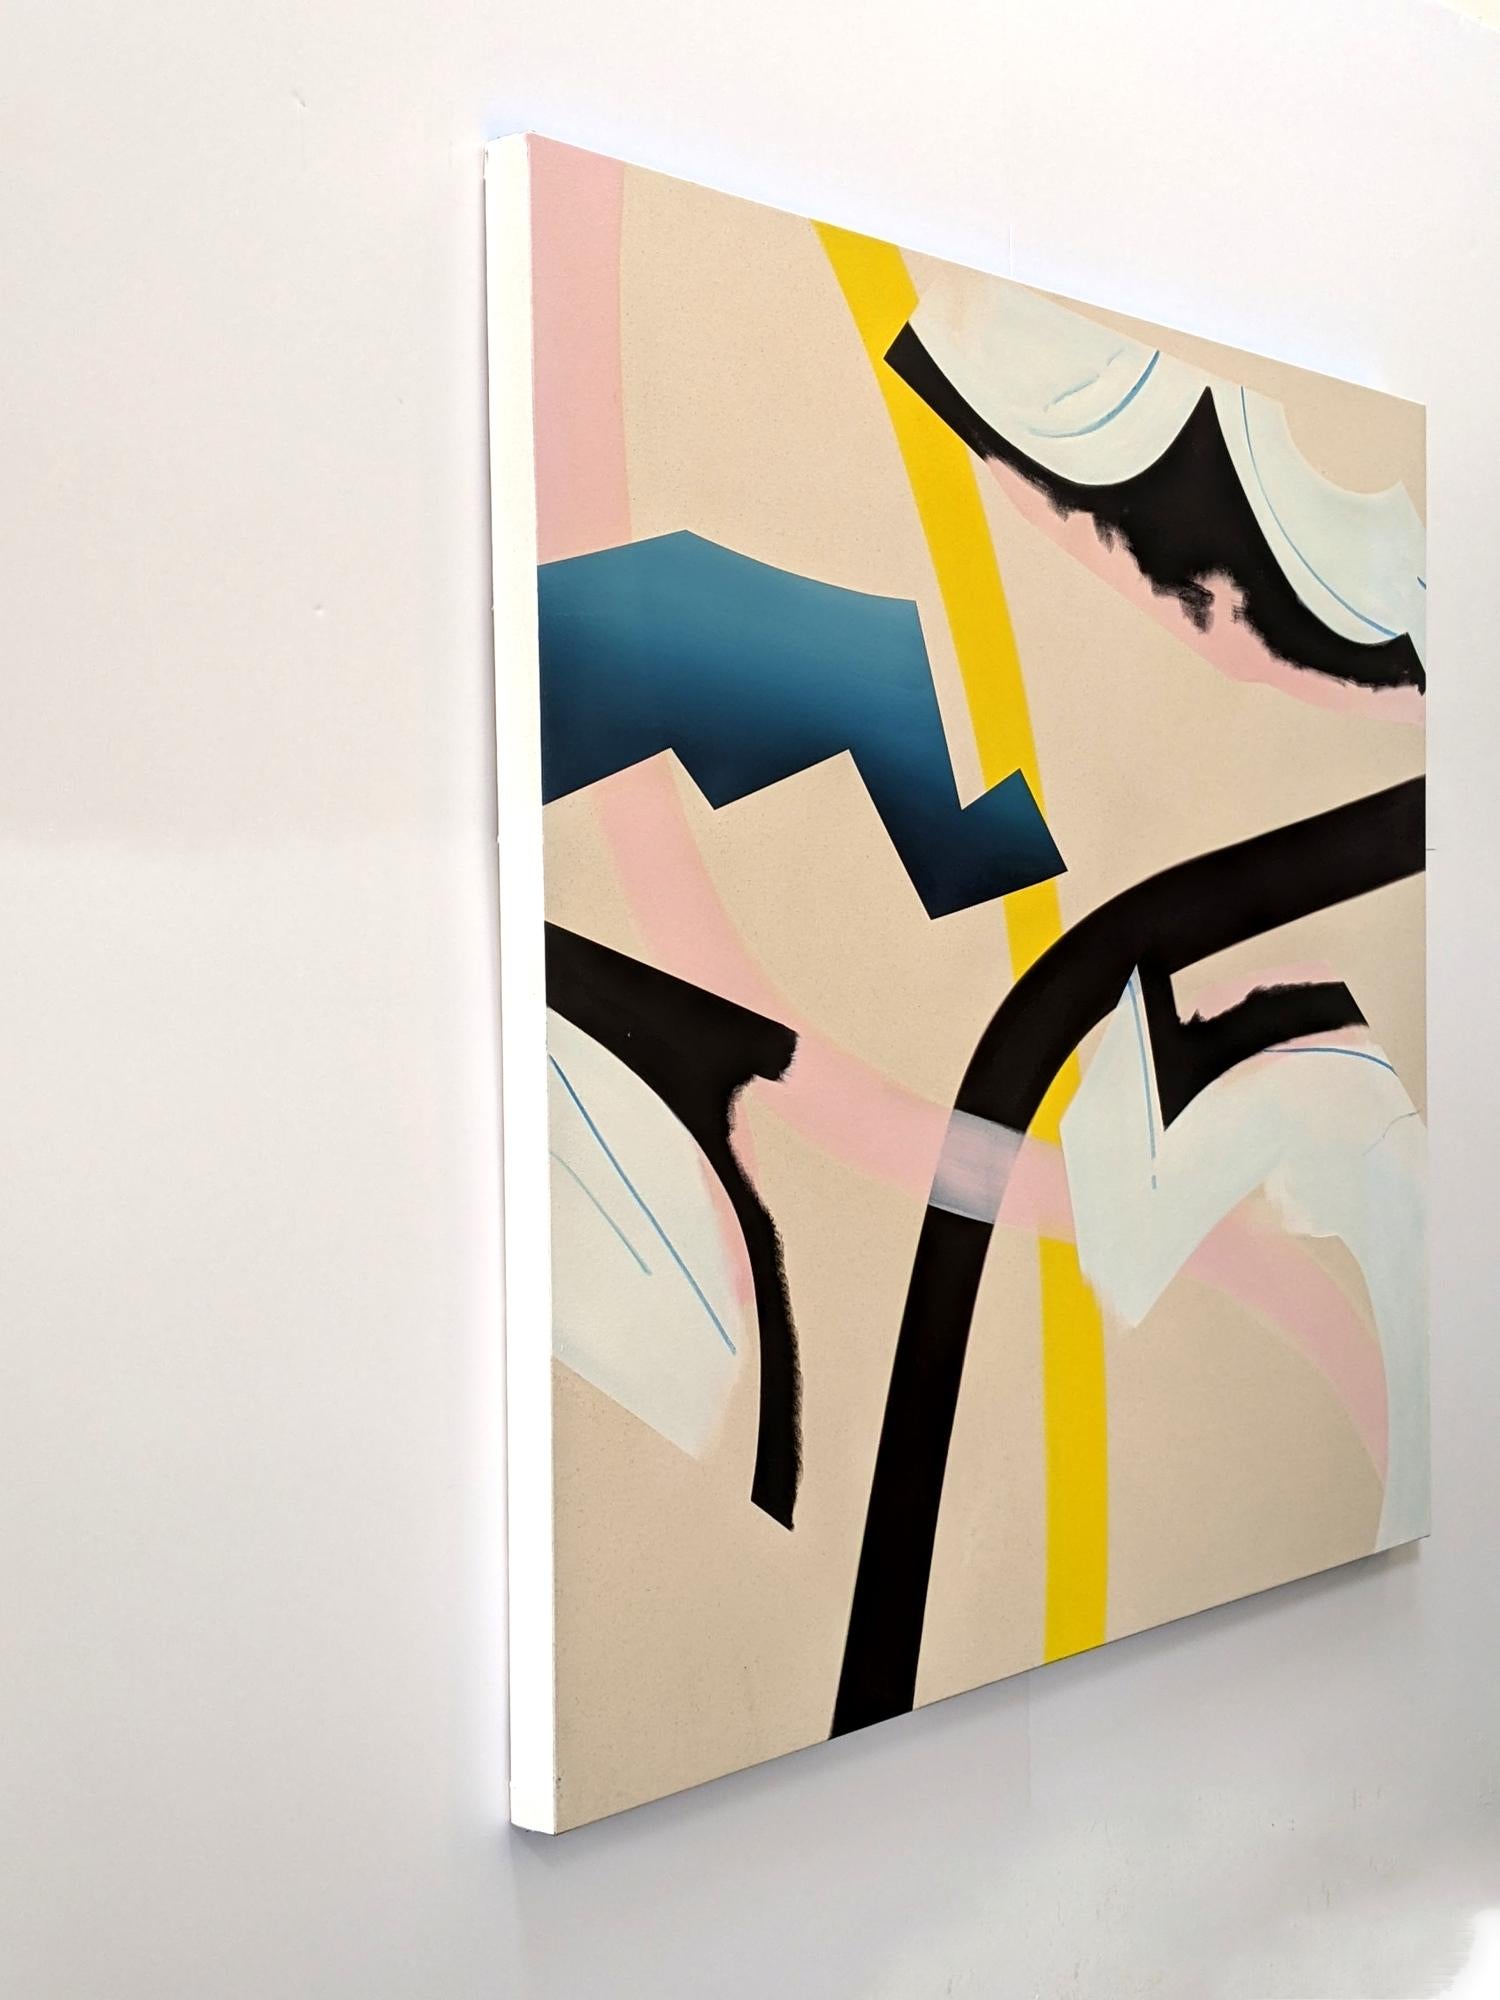 Dans cette œuvre abstraite lyrique de Mel Davis, née à Montréal, des formes organiques se croisent dans une composition ludique. En utilisant la forme et la couleur - bleu, jaune, rose vif, noir et blanc neige - Davis réimagine le paysage